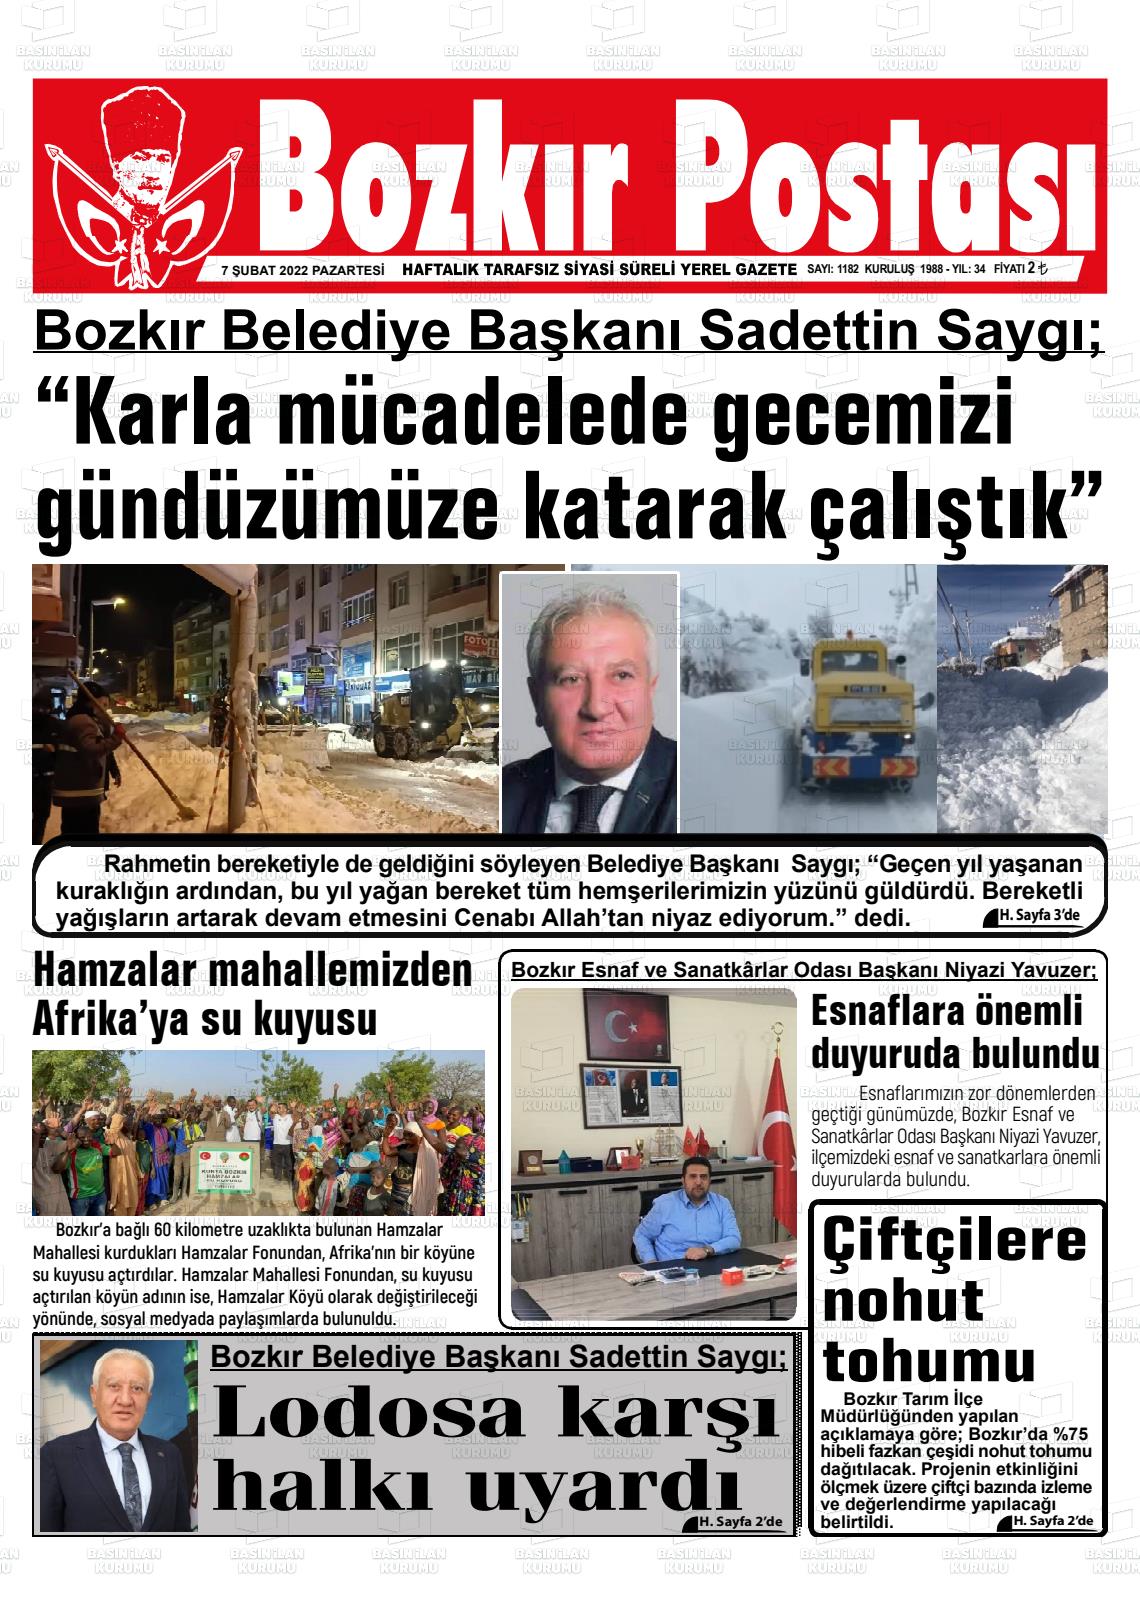 07 Şubat 2022 tarihli bozkır postası gazete manşetleri